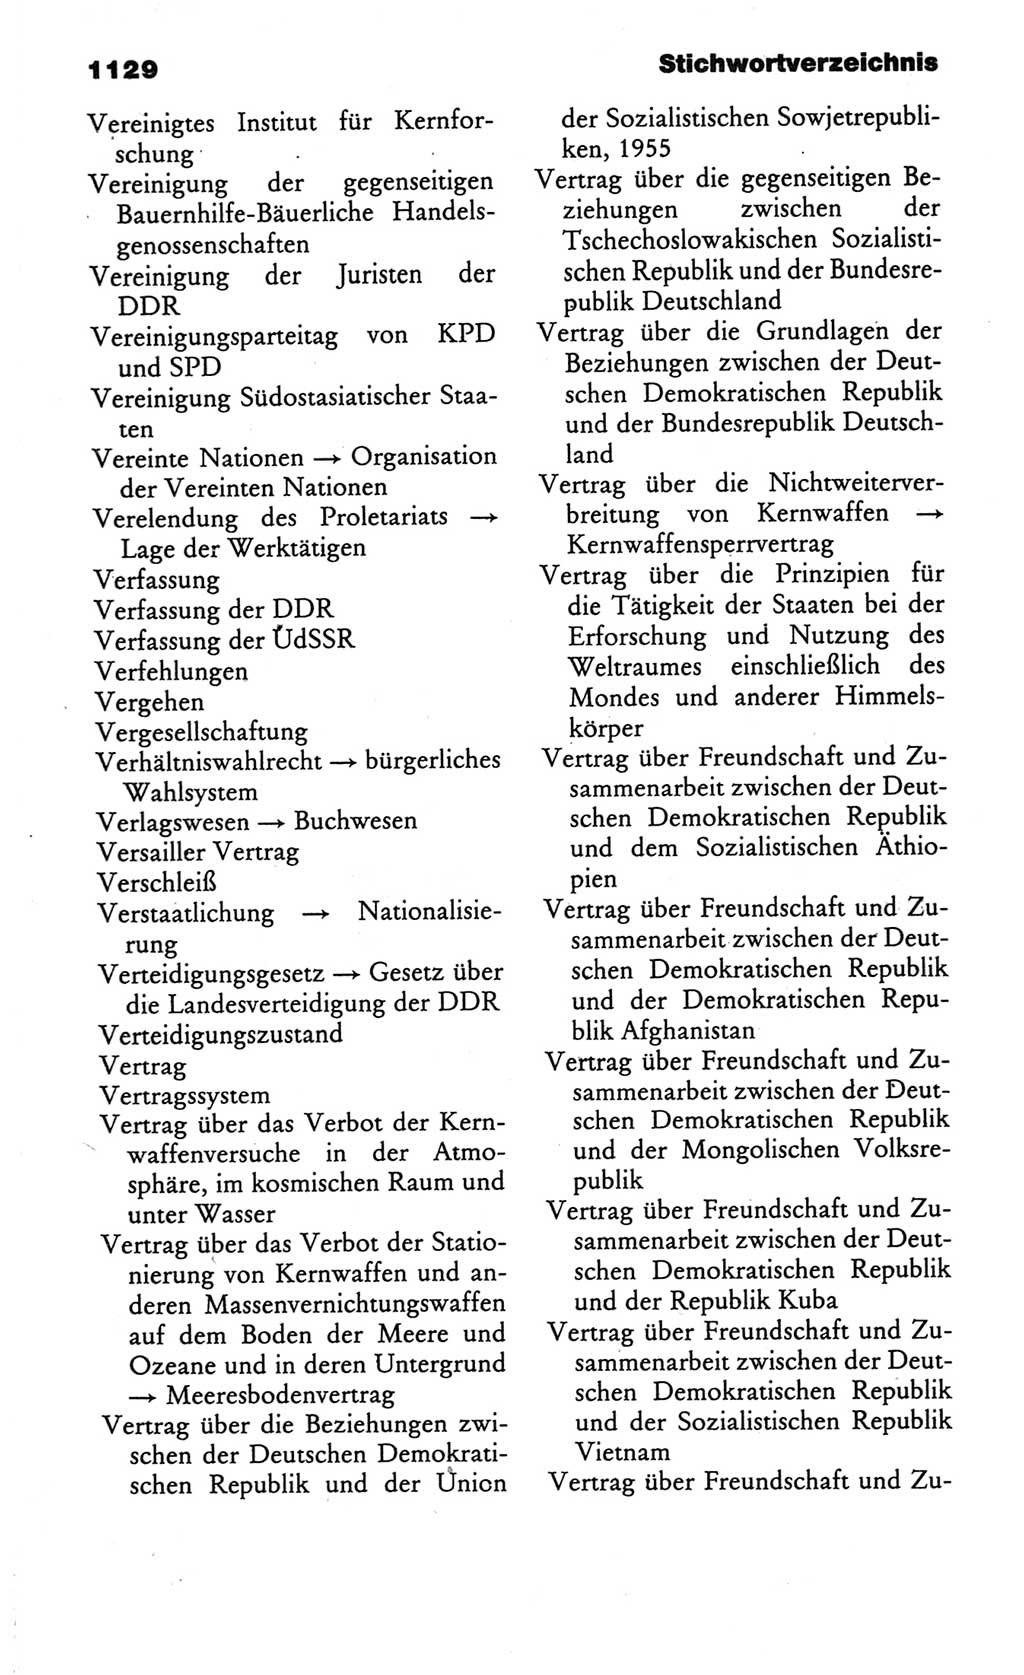 Kleines politisches Wörterbuch [Deutsche Demokratische Republik (DDR)] 1986, Seite 1129 (Kl. pol. Wb. DDR 1986, S. 1129)